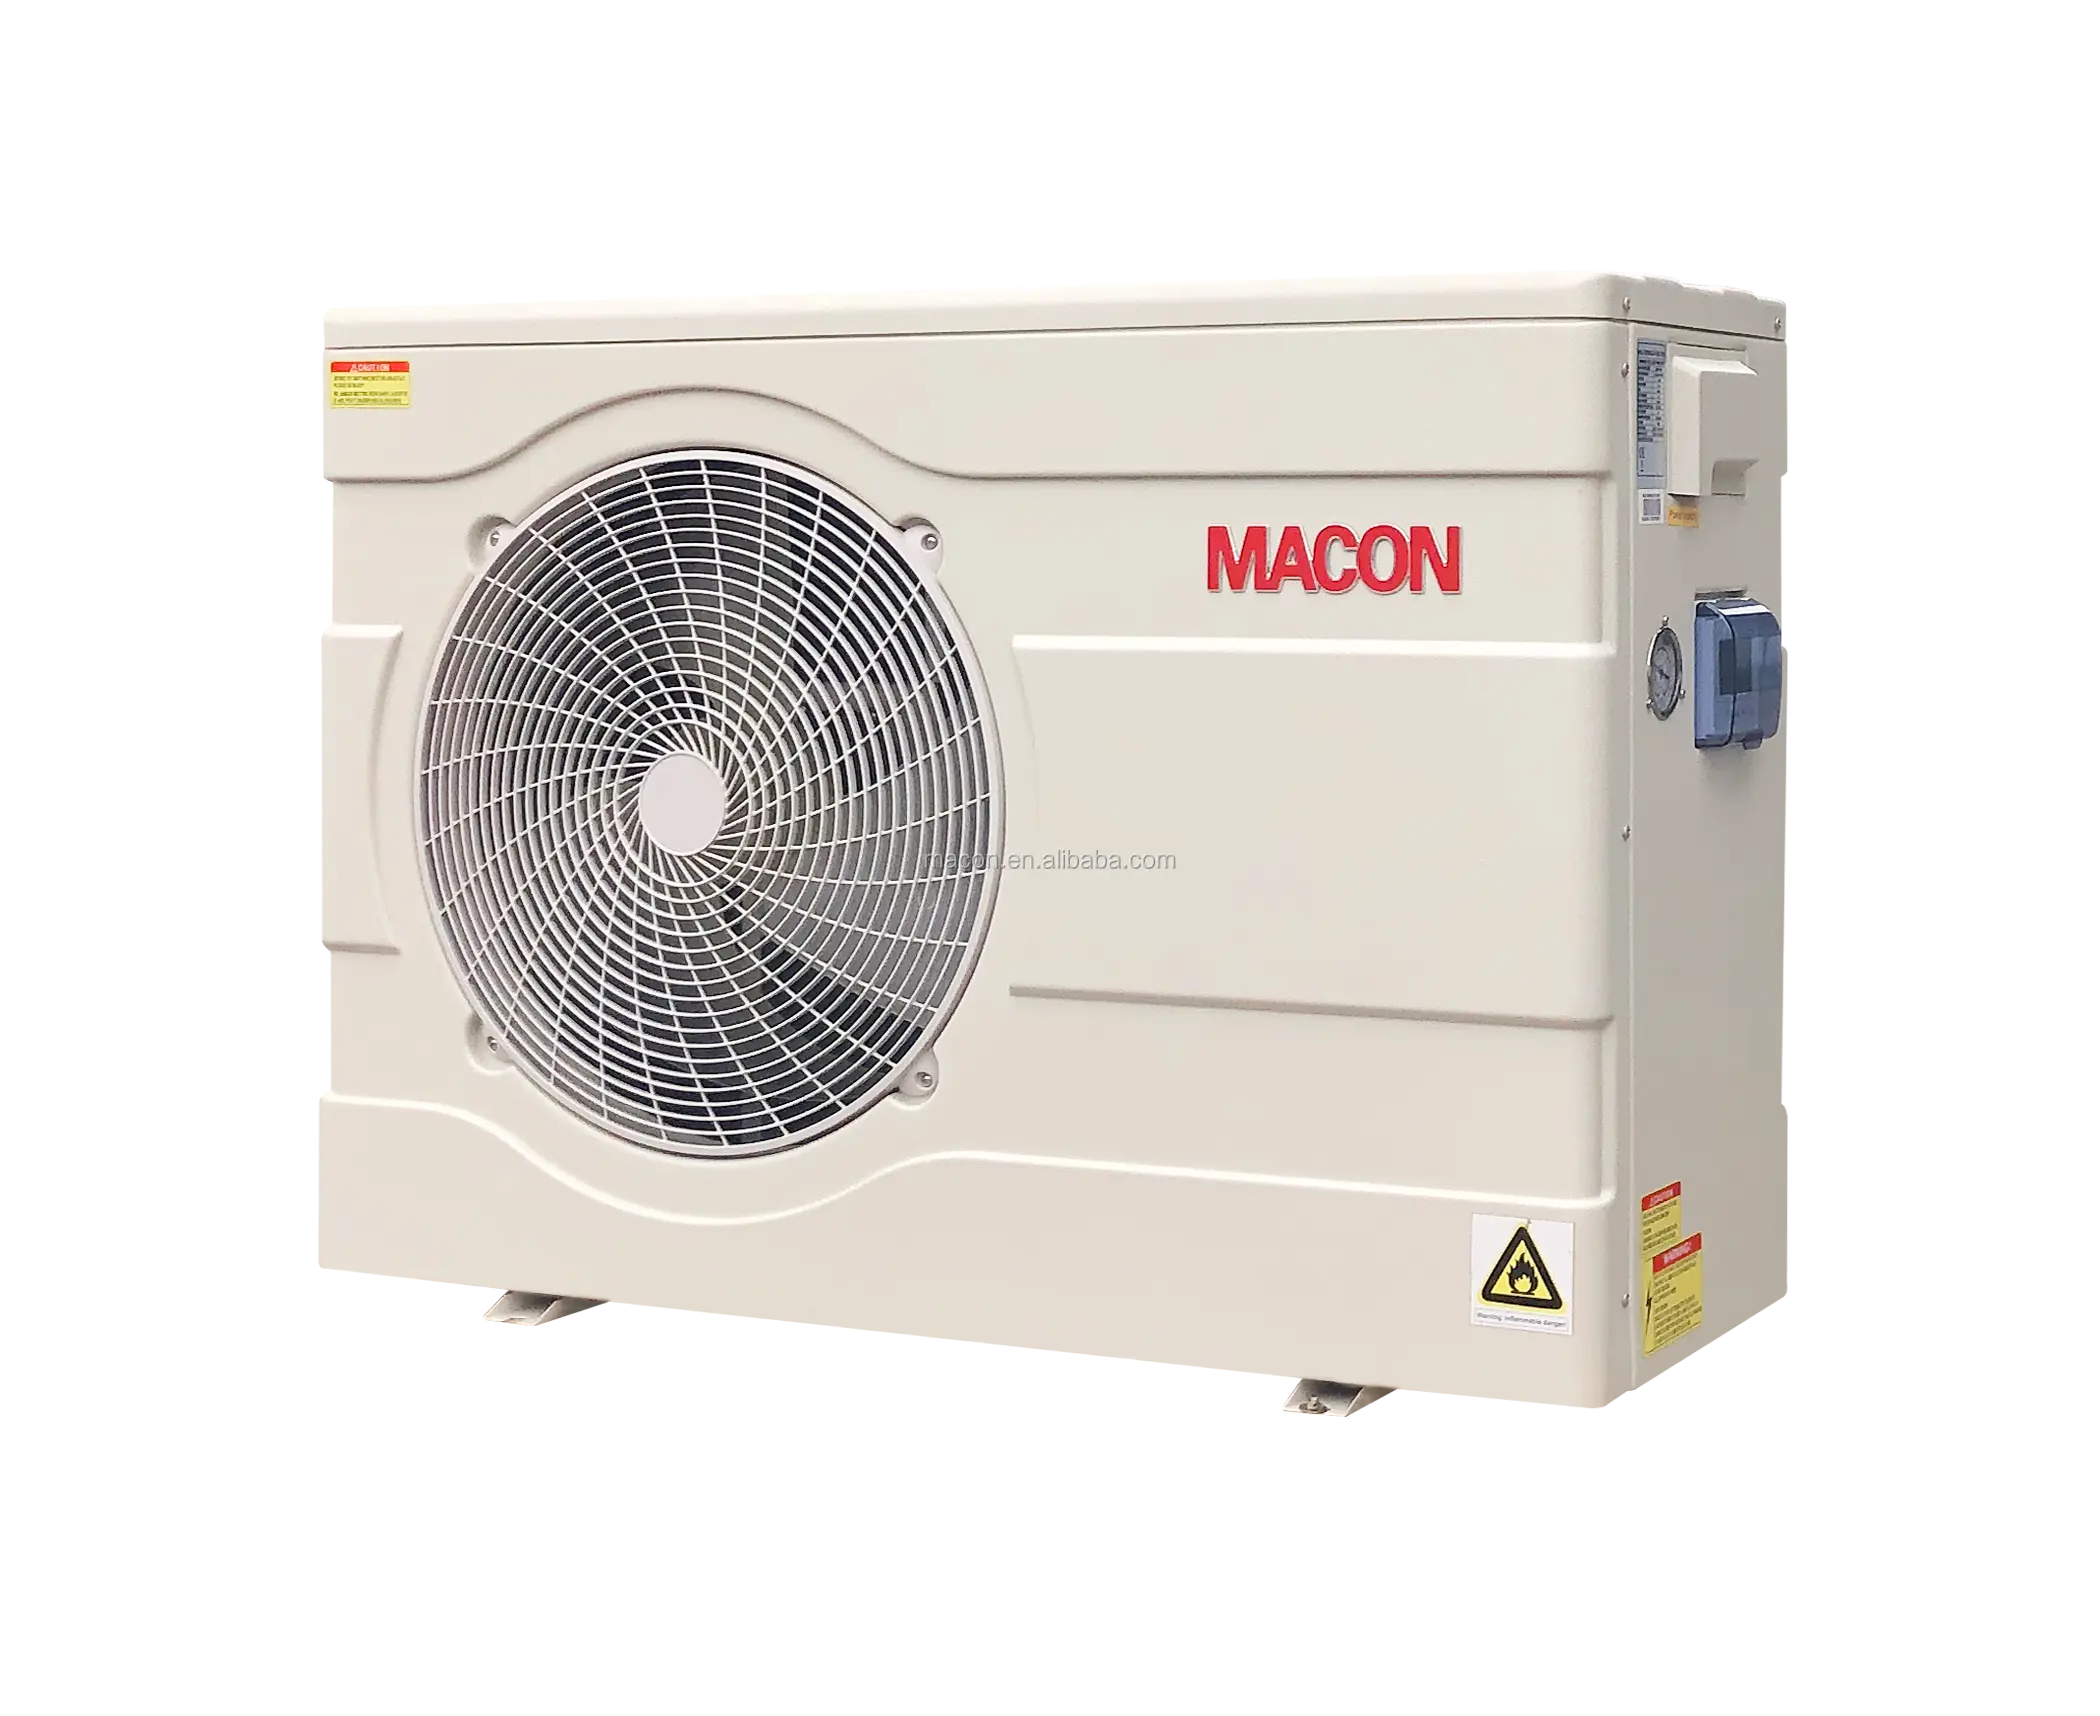 Macon 17.5kw R32 инвертор бассейн обогреватели тепловой насос для плавательного бассейна, водный нагреватель нагревательный элемент для бассейна с CE-DGE80815038